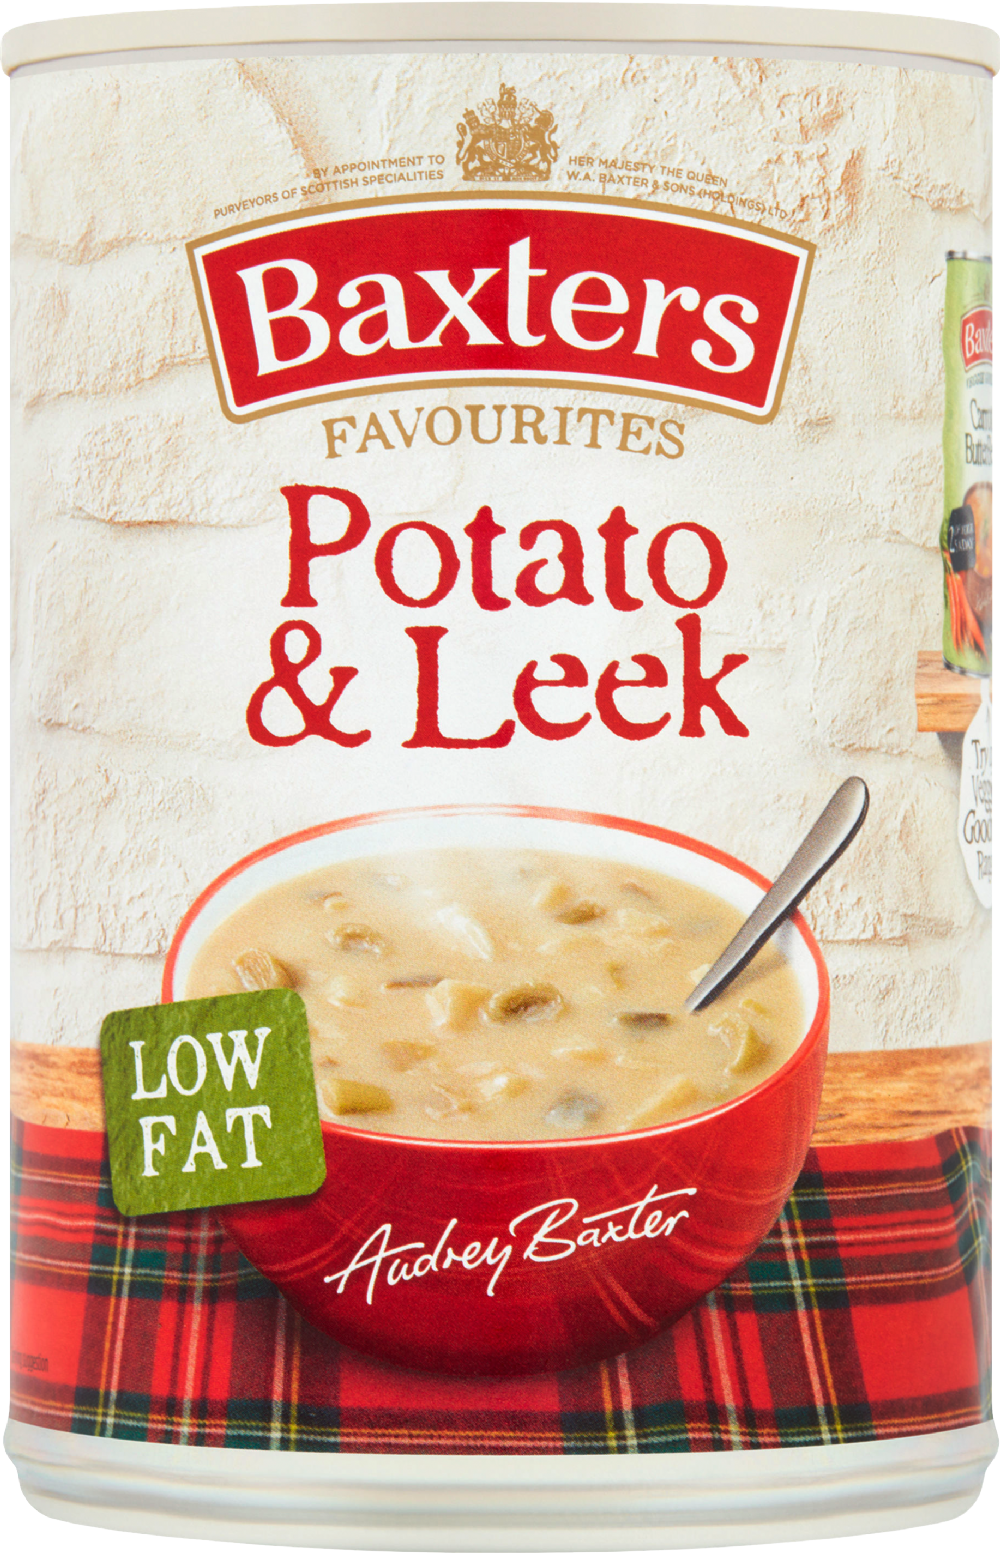 BAXTERS Favourites Potato & Leek Soup 400g